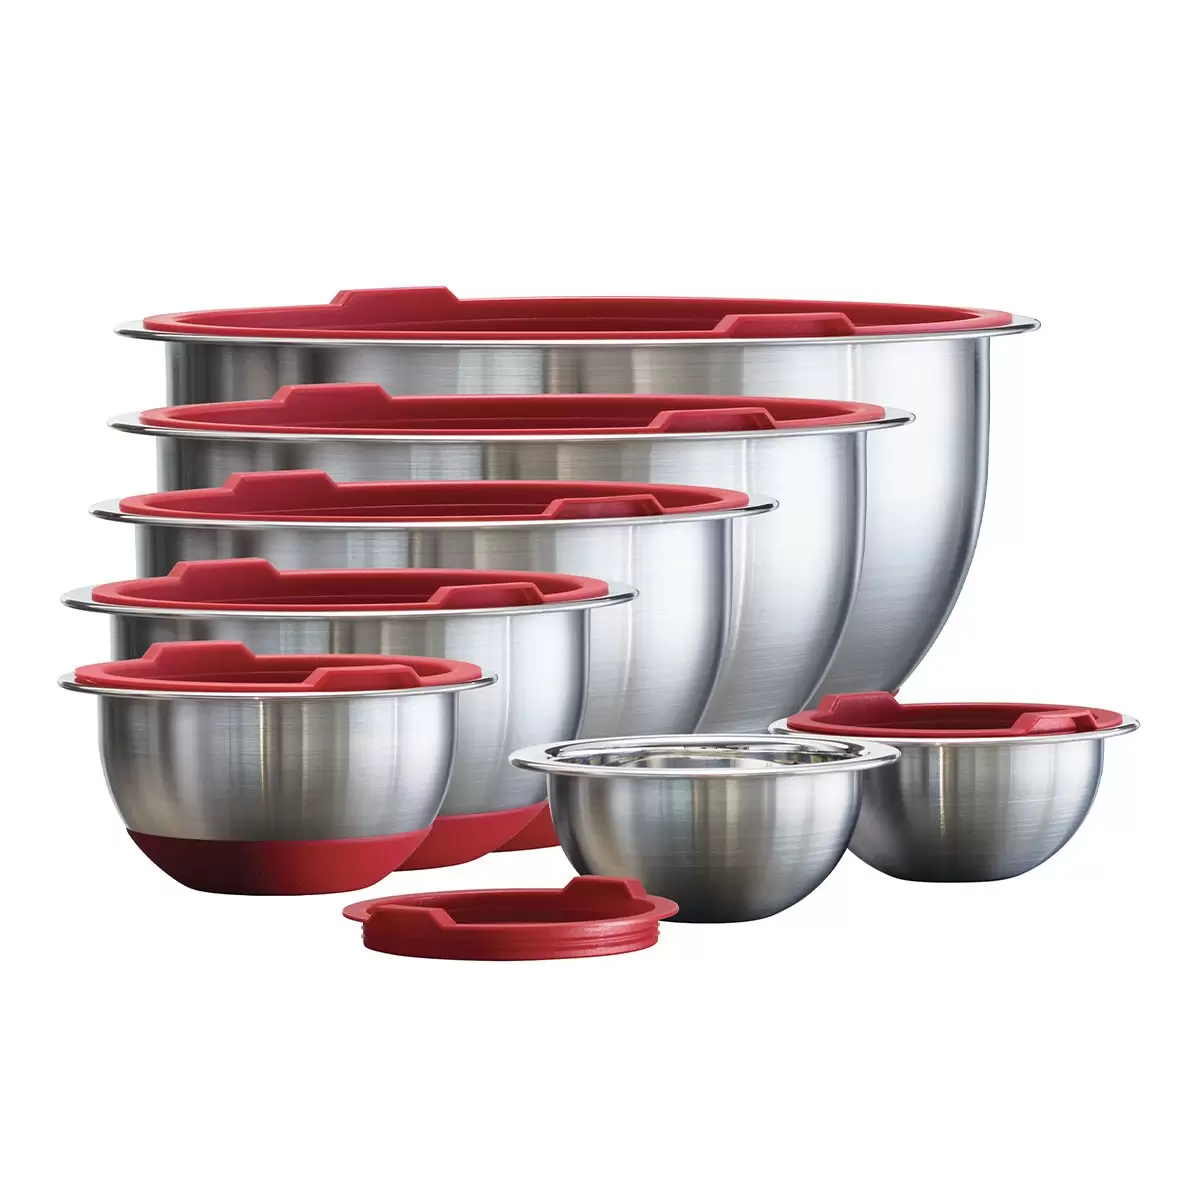 Tramontina 不鏽鋼調理碗含蓋 14件組 紅色